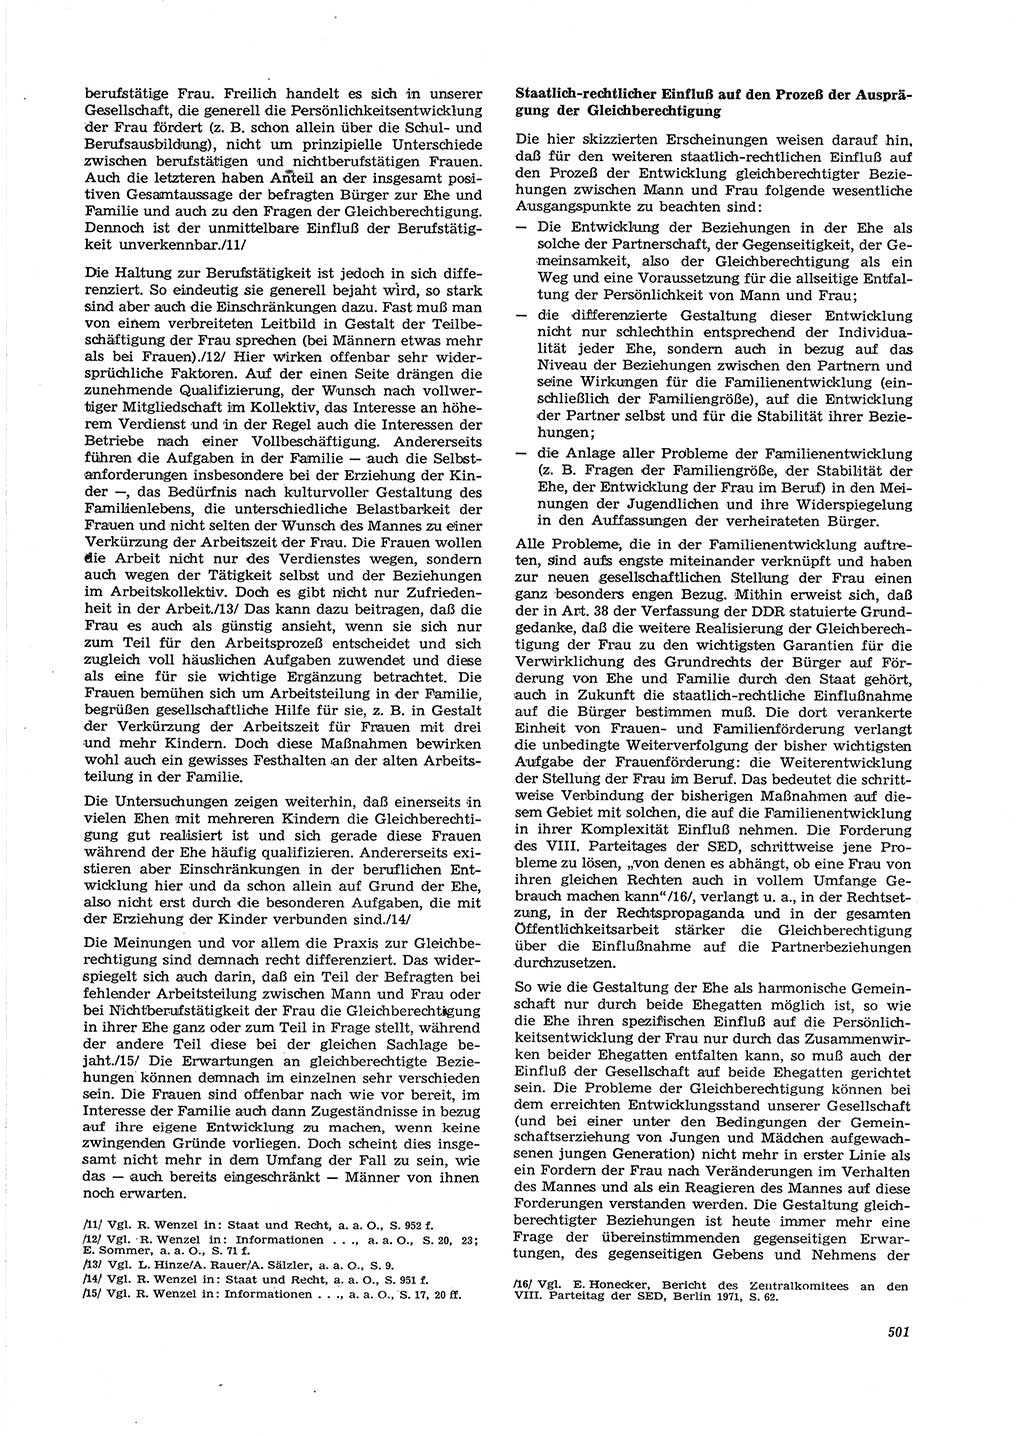 Neue Justiz (NJ), Zeitschrift für Recht und Rechtswissenschaft [Deutsche Demokratische Republik (DDR)], 29. Jahrgang 1975, Seite 501 (NJ DDR 1975, S. 501)